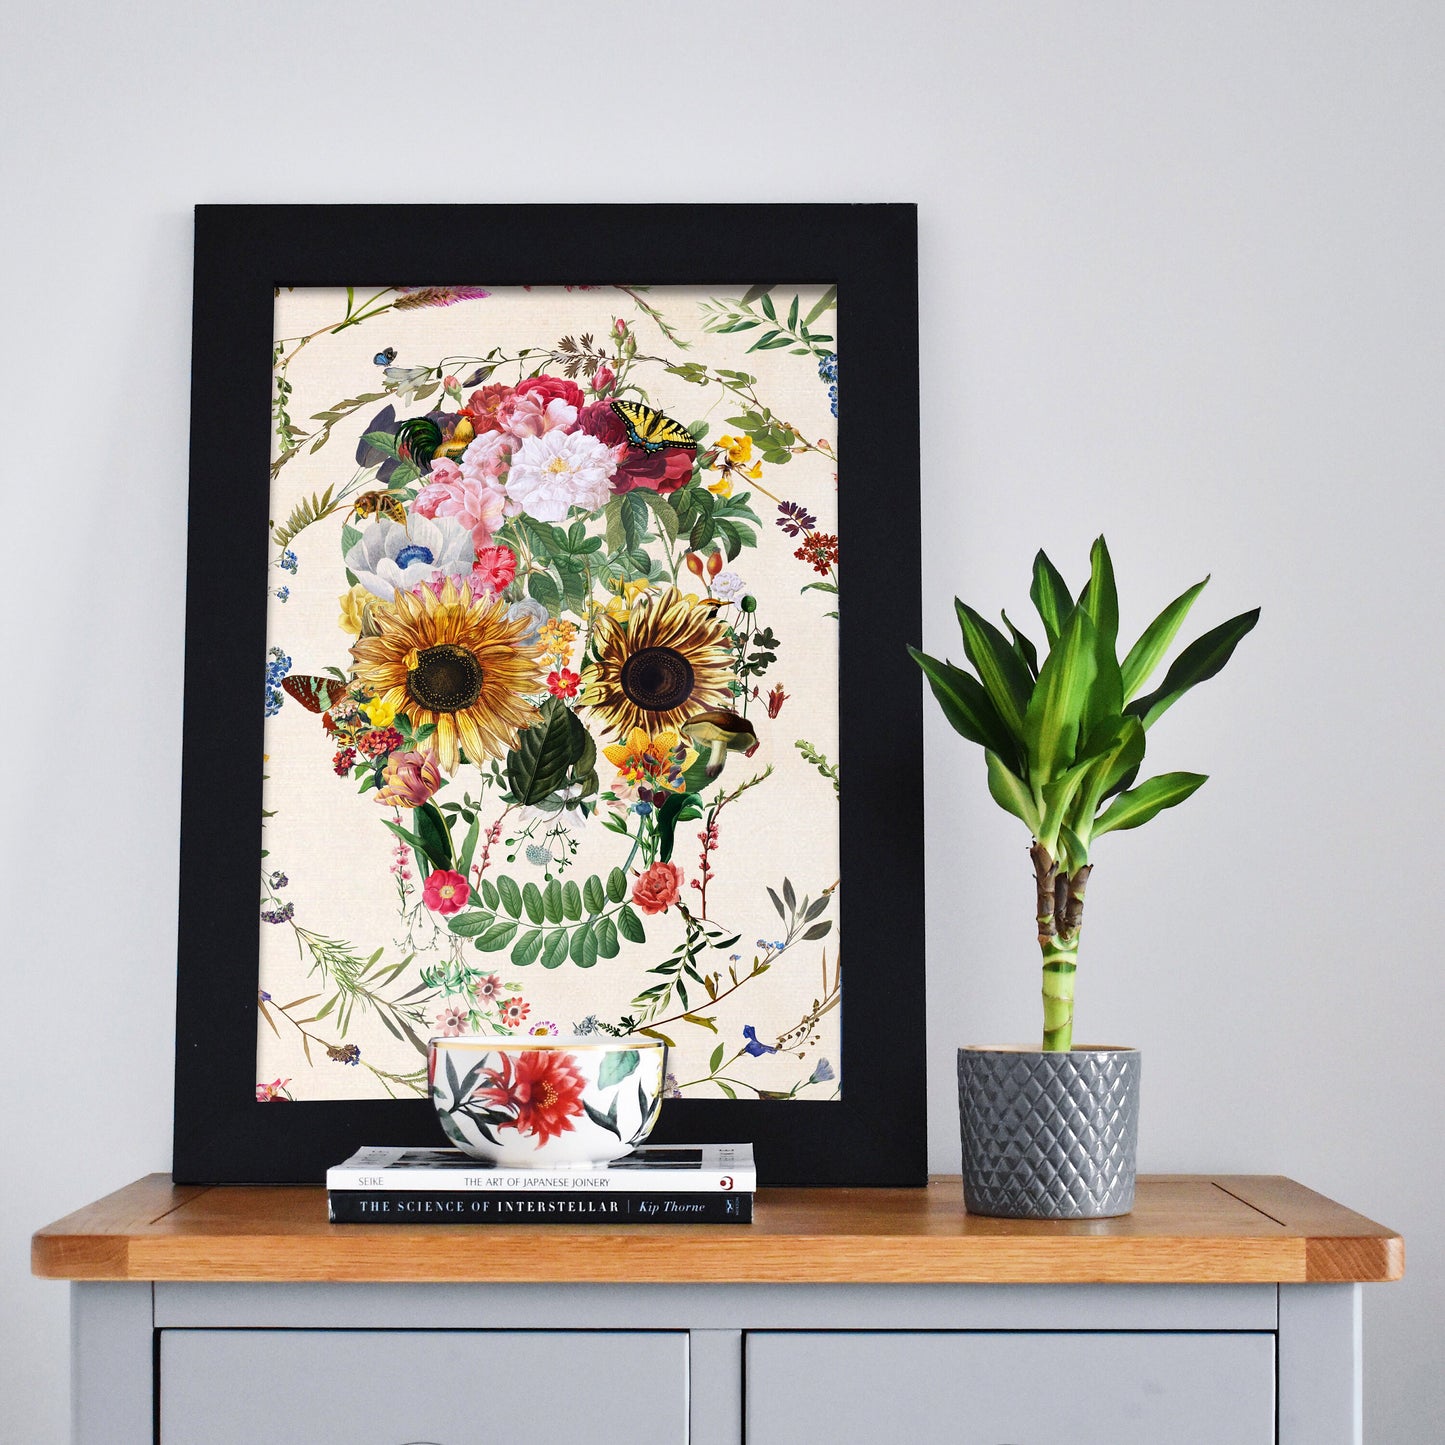 Floral Skull Poster, Circle Flower Skull Art Print, Sugar Skull Poster Wall Art Gift, Boho Floral Skull Art Home Decor